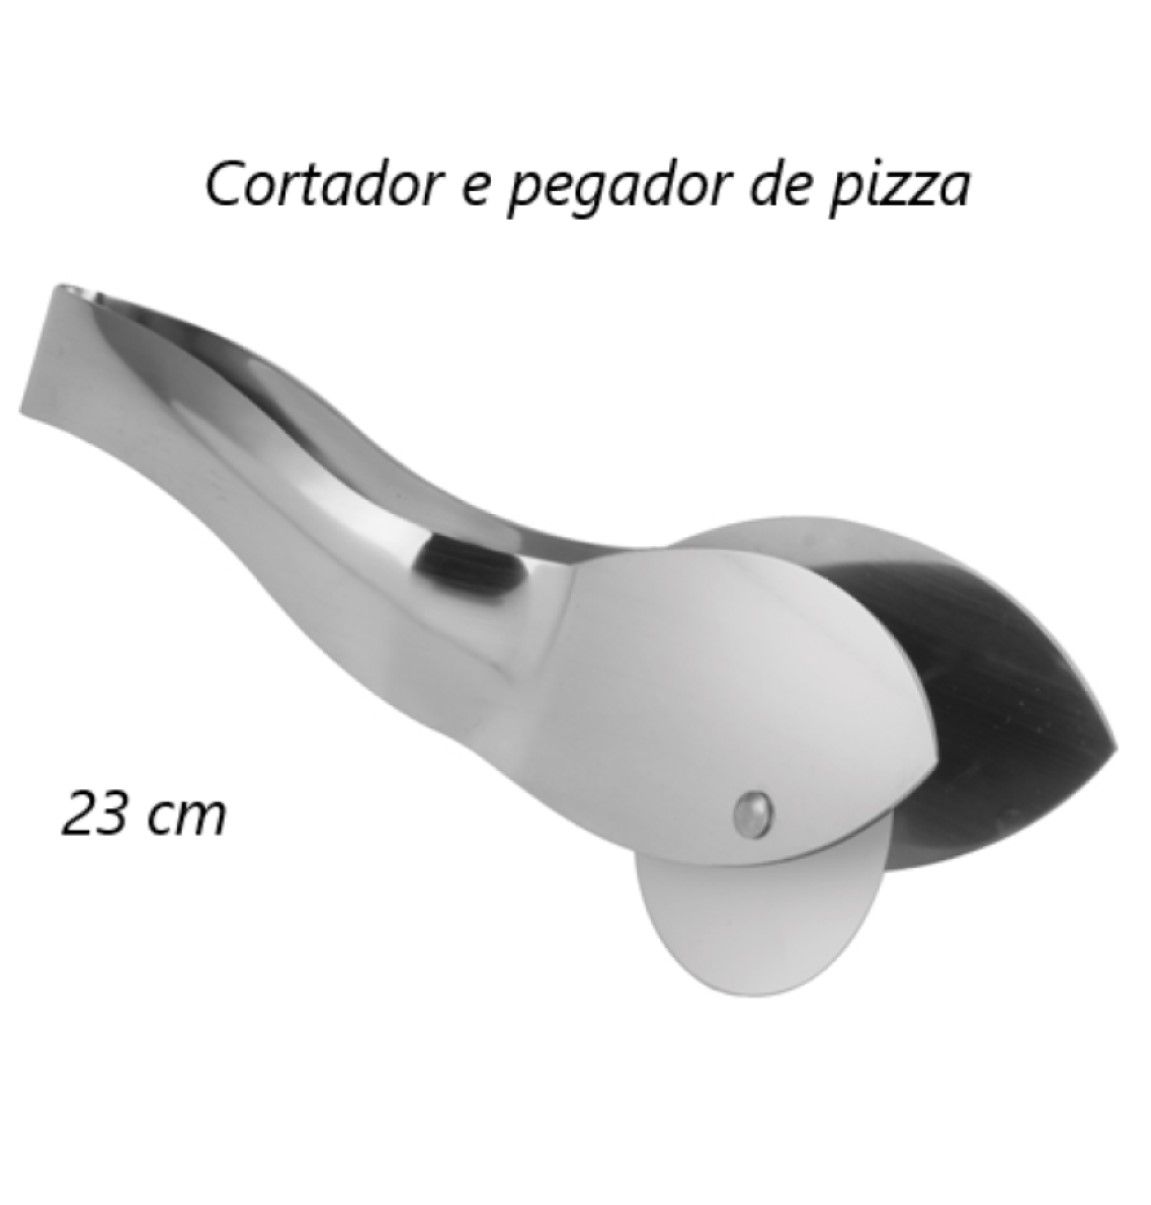 Cortador de pizza e pegador para servir aço inox 23cm uni UD15071